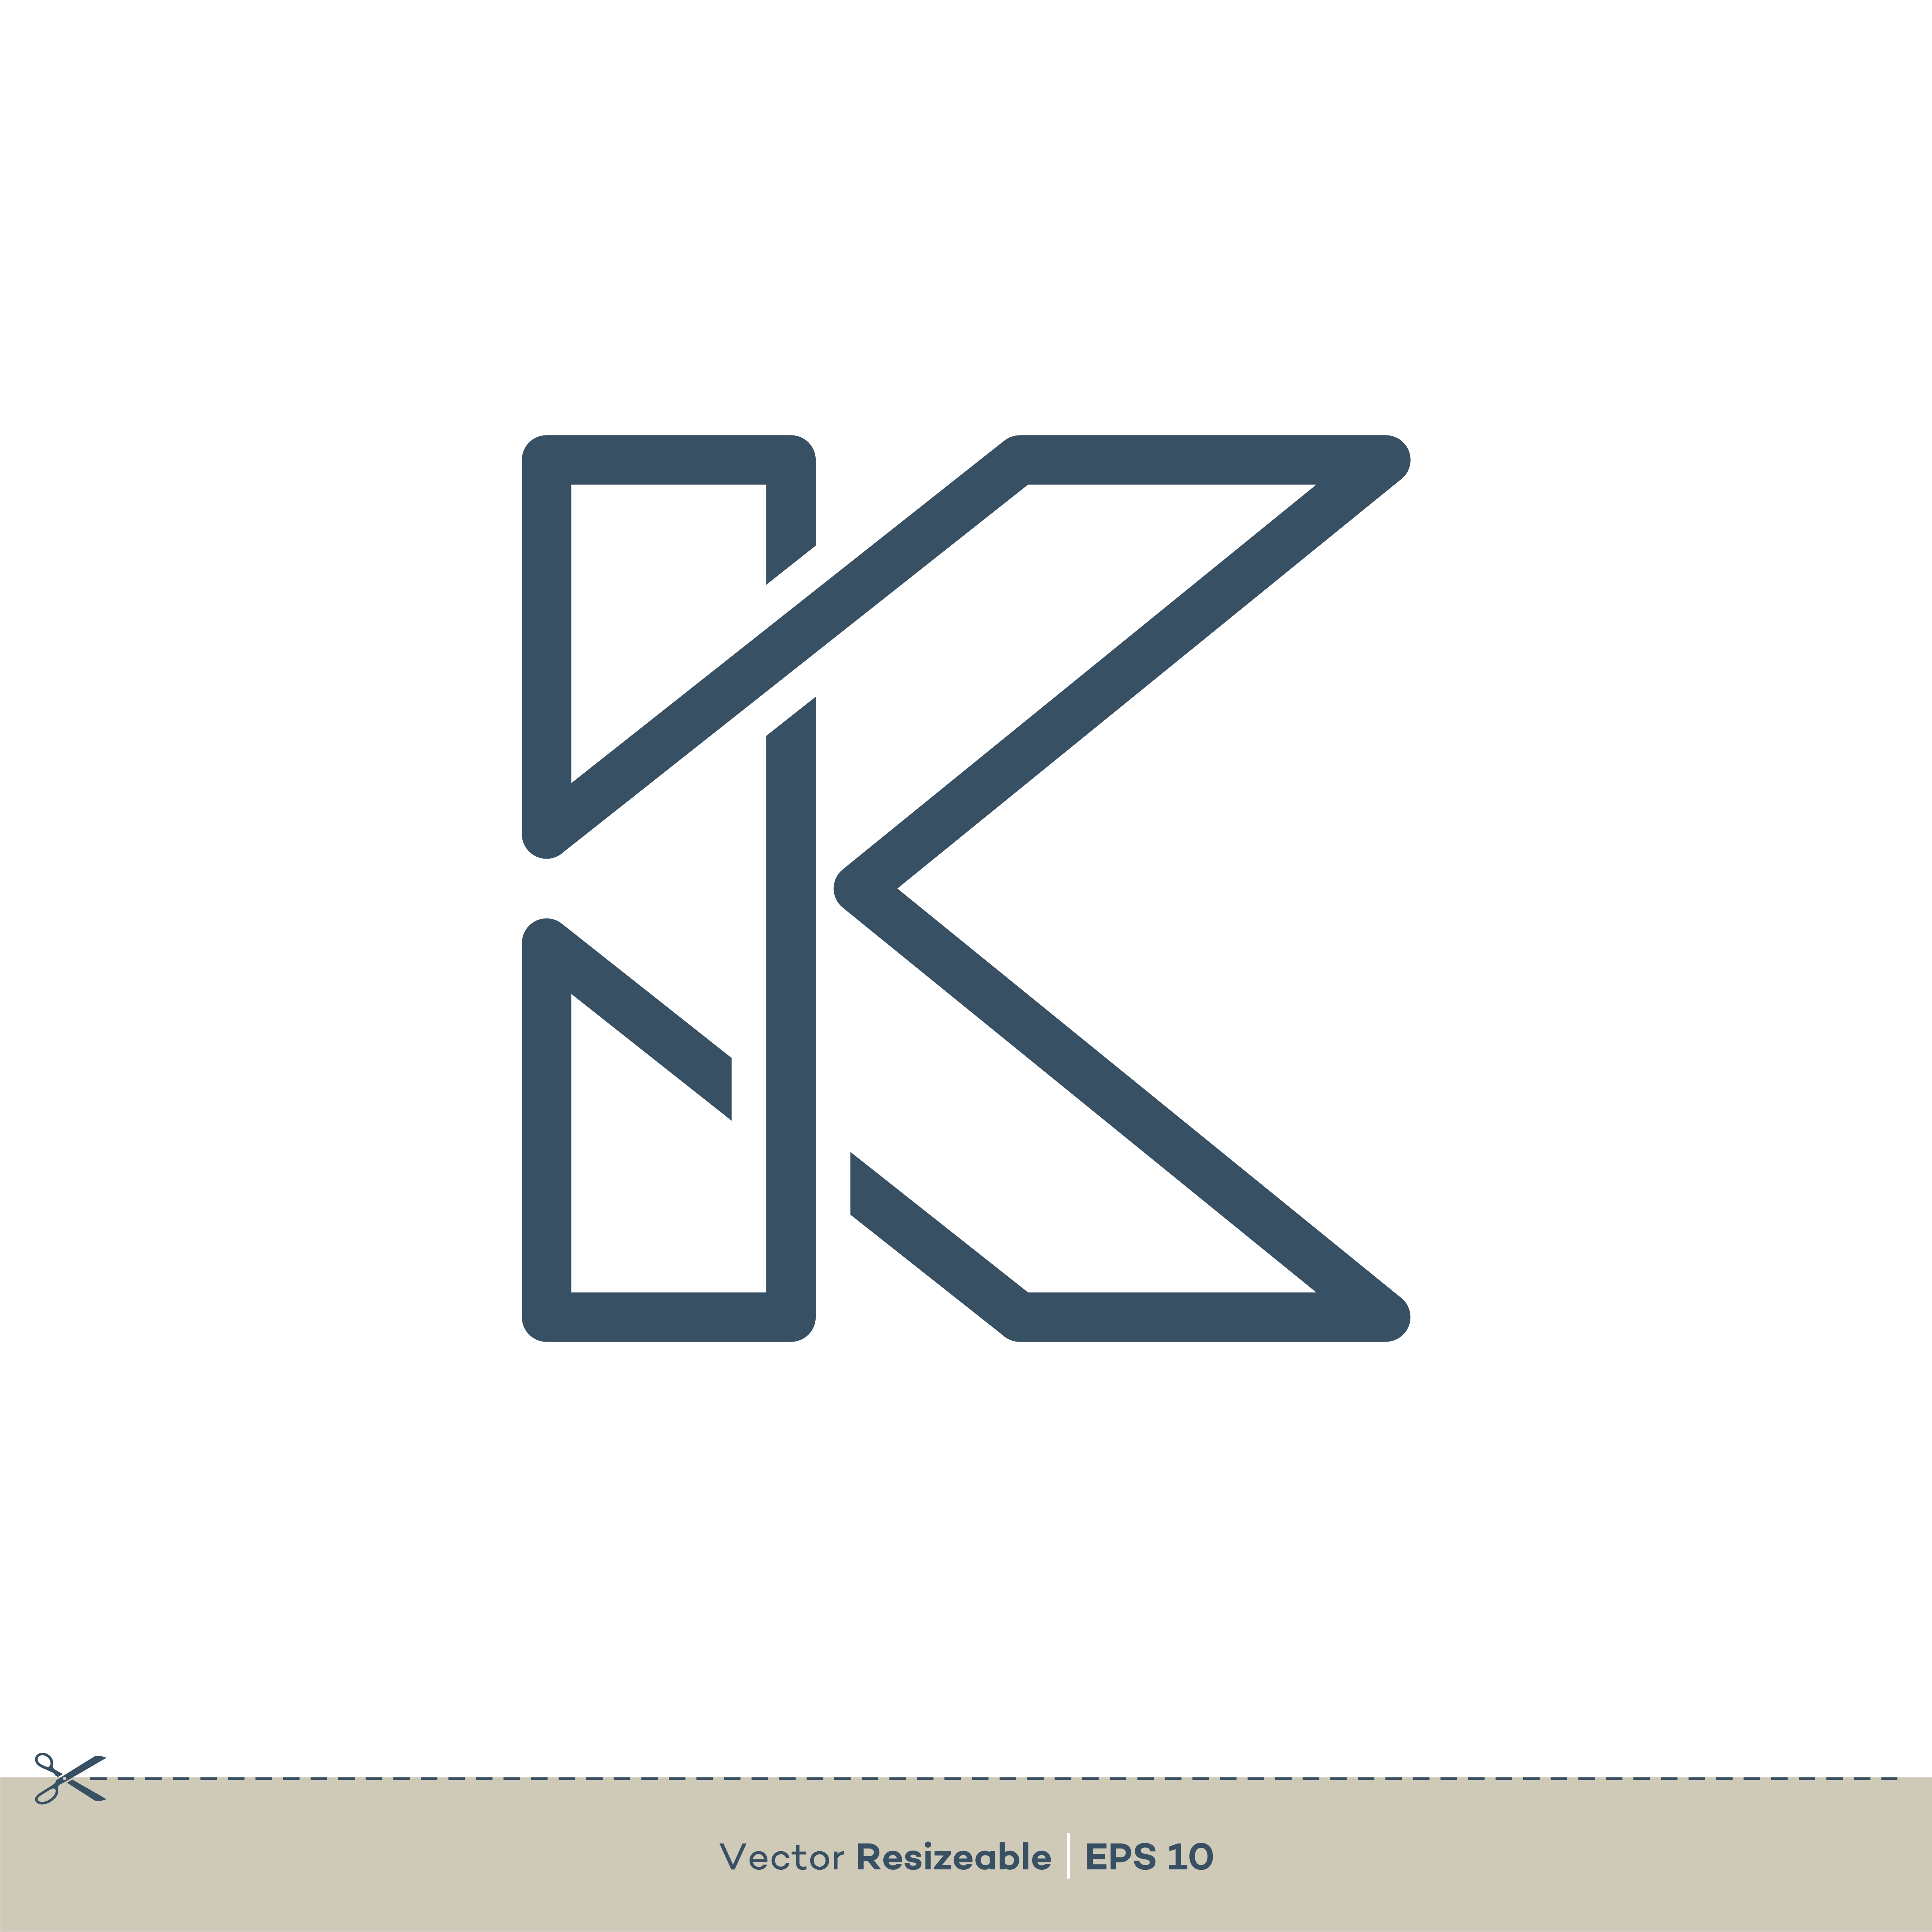 Logo Heart Letter K. Beautiful vector love logo design. K love outline ...